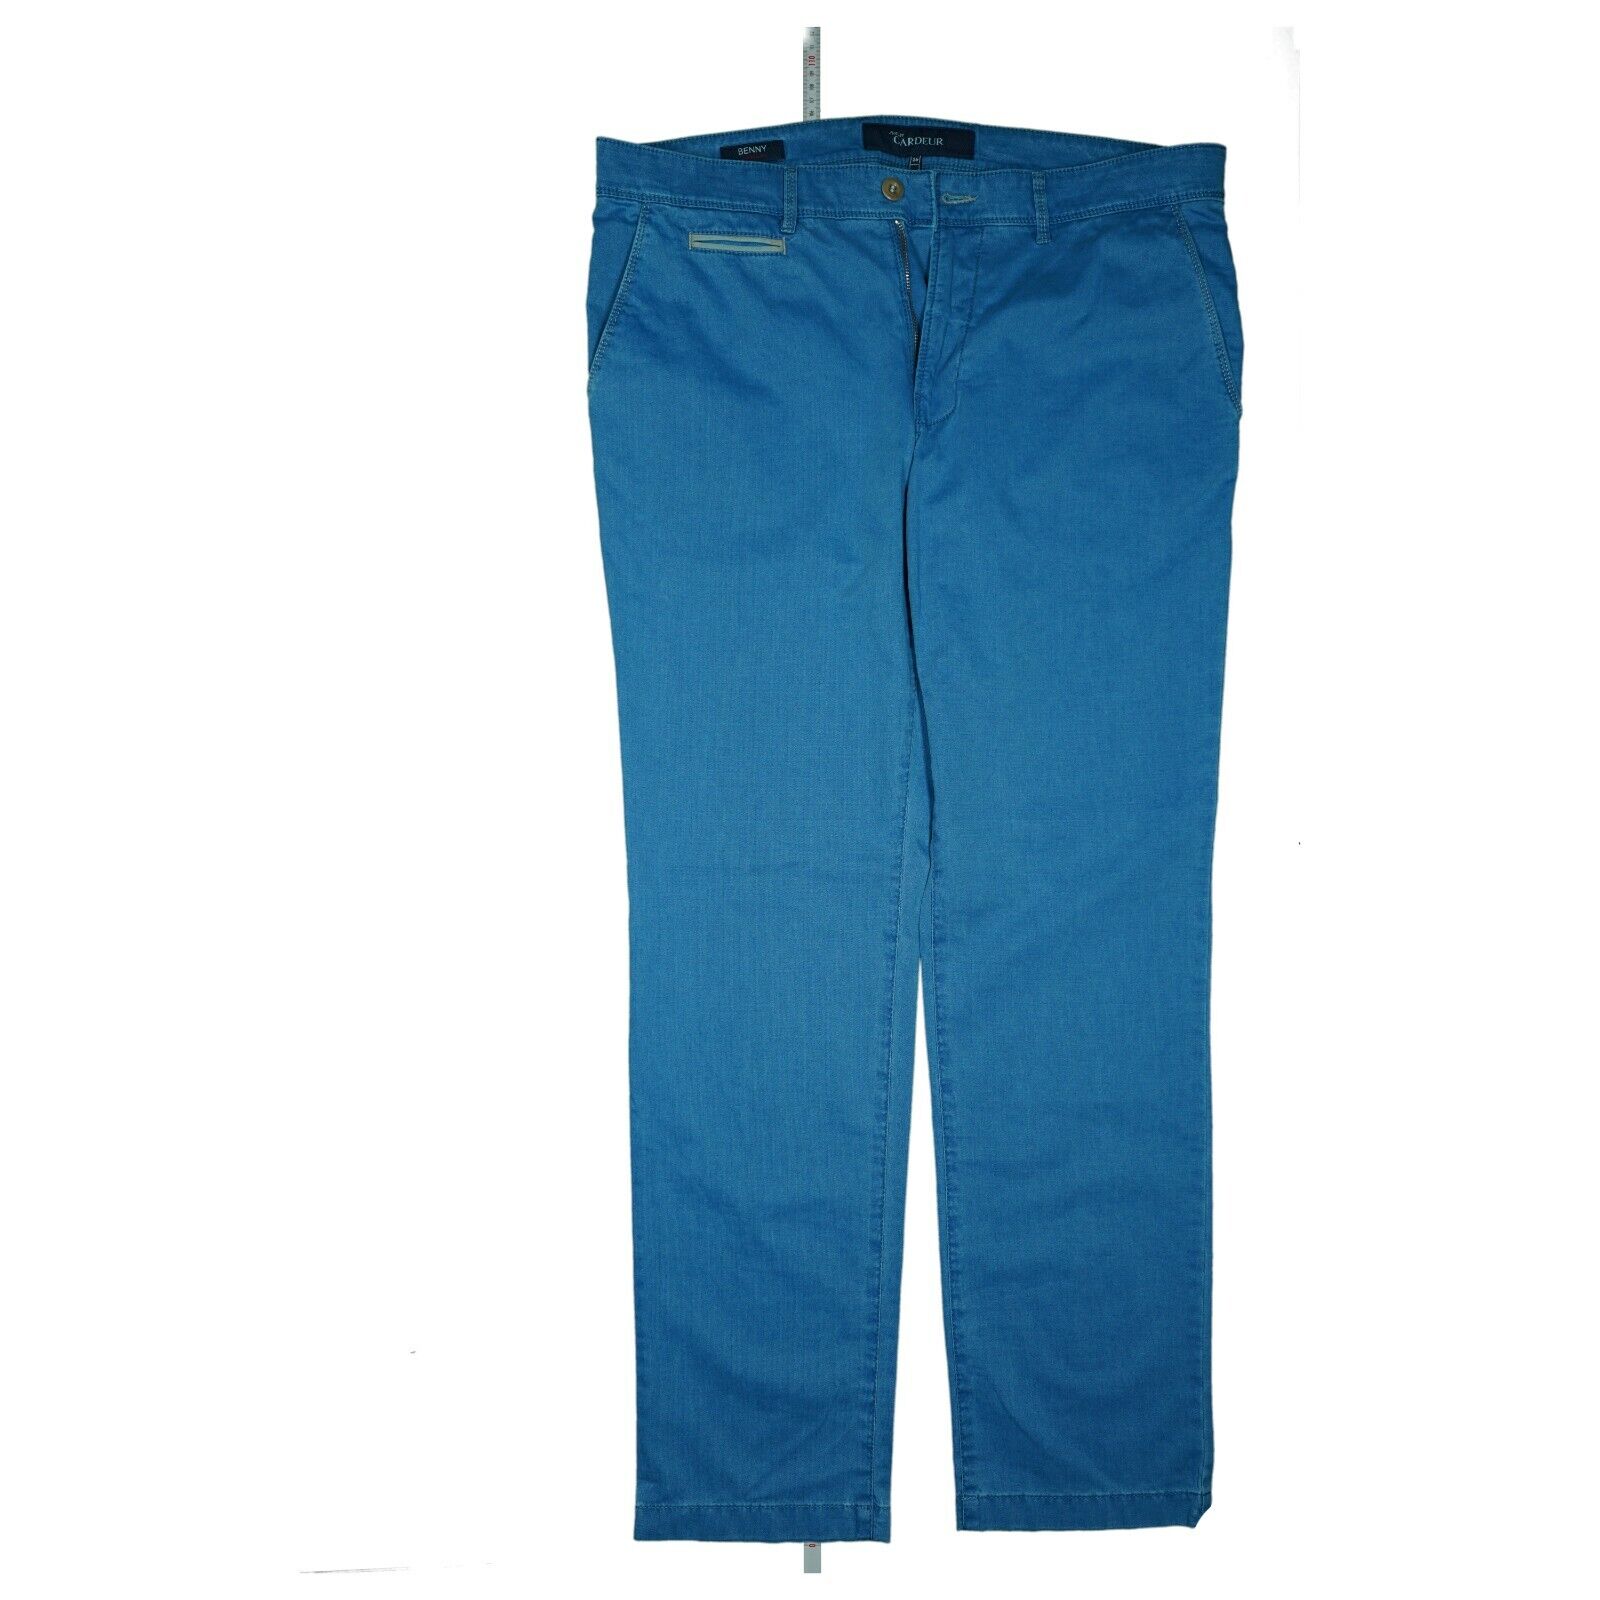 GARDEUR Benny Modern Fit Stretch Chino Jeans Pants 26 Blue | eBay